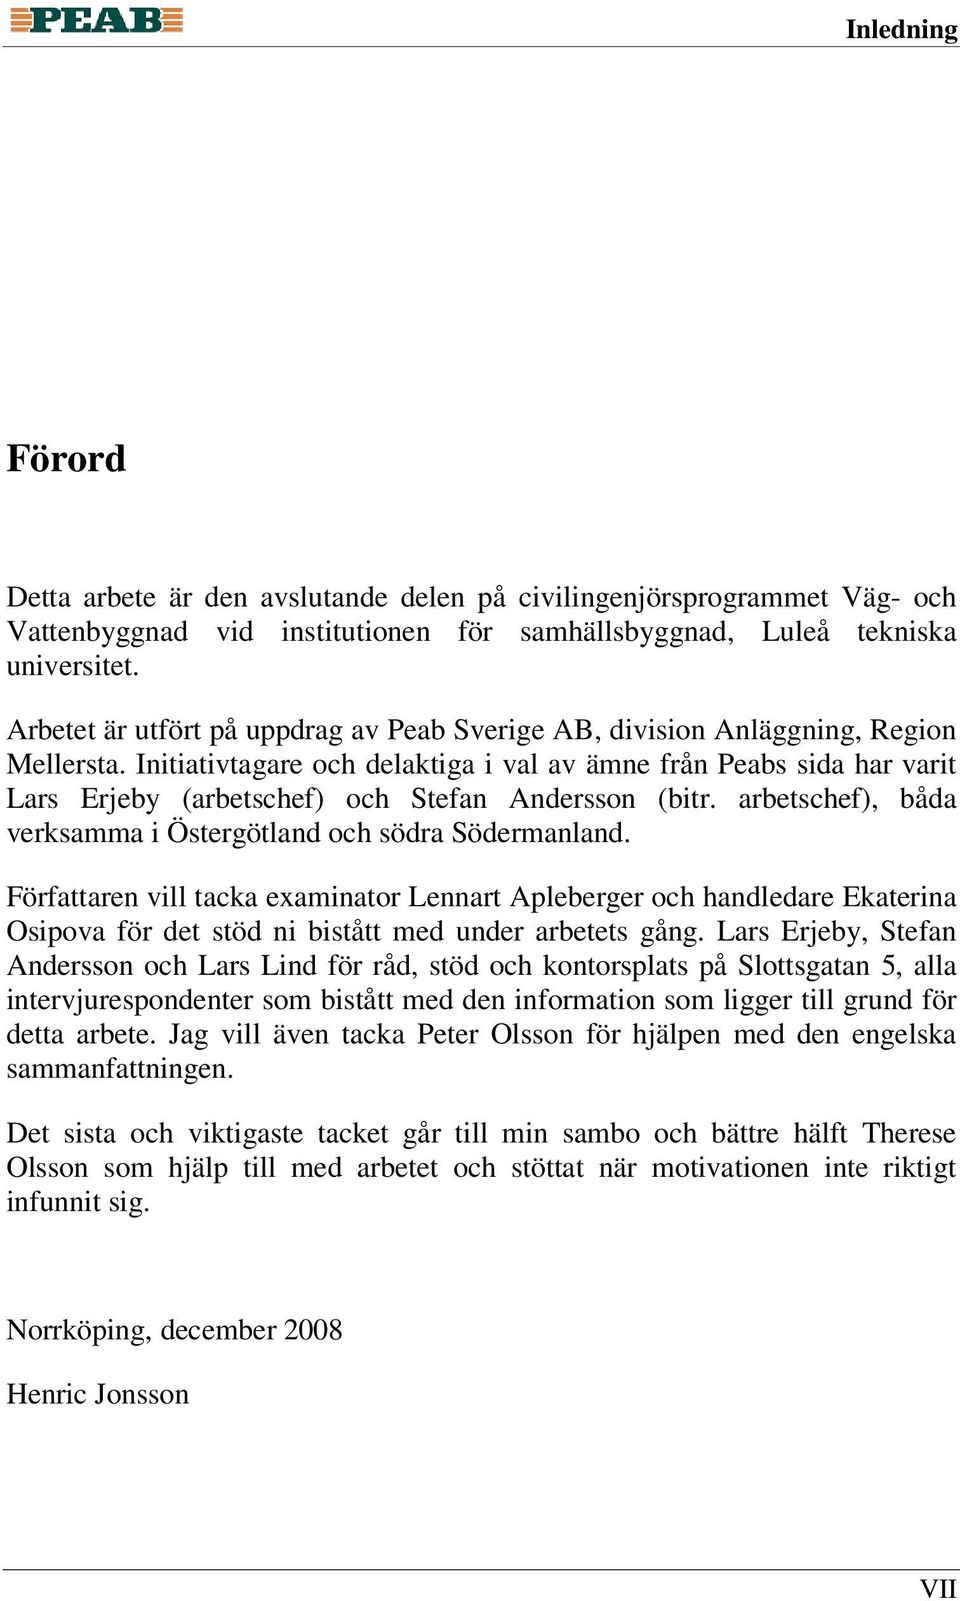 Initiativtagare och delaktiga i val av ämne från Peabs sida har varit Lars Erjeby (arbetschef) och Stefan Andersson (bitr. arbetschef), båda verksamma i Östergötland och södra Södermanland.